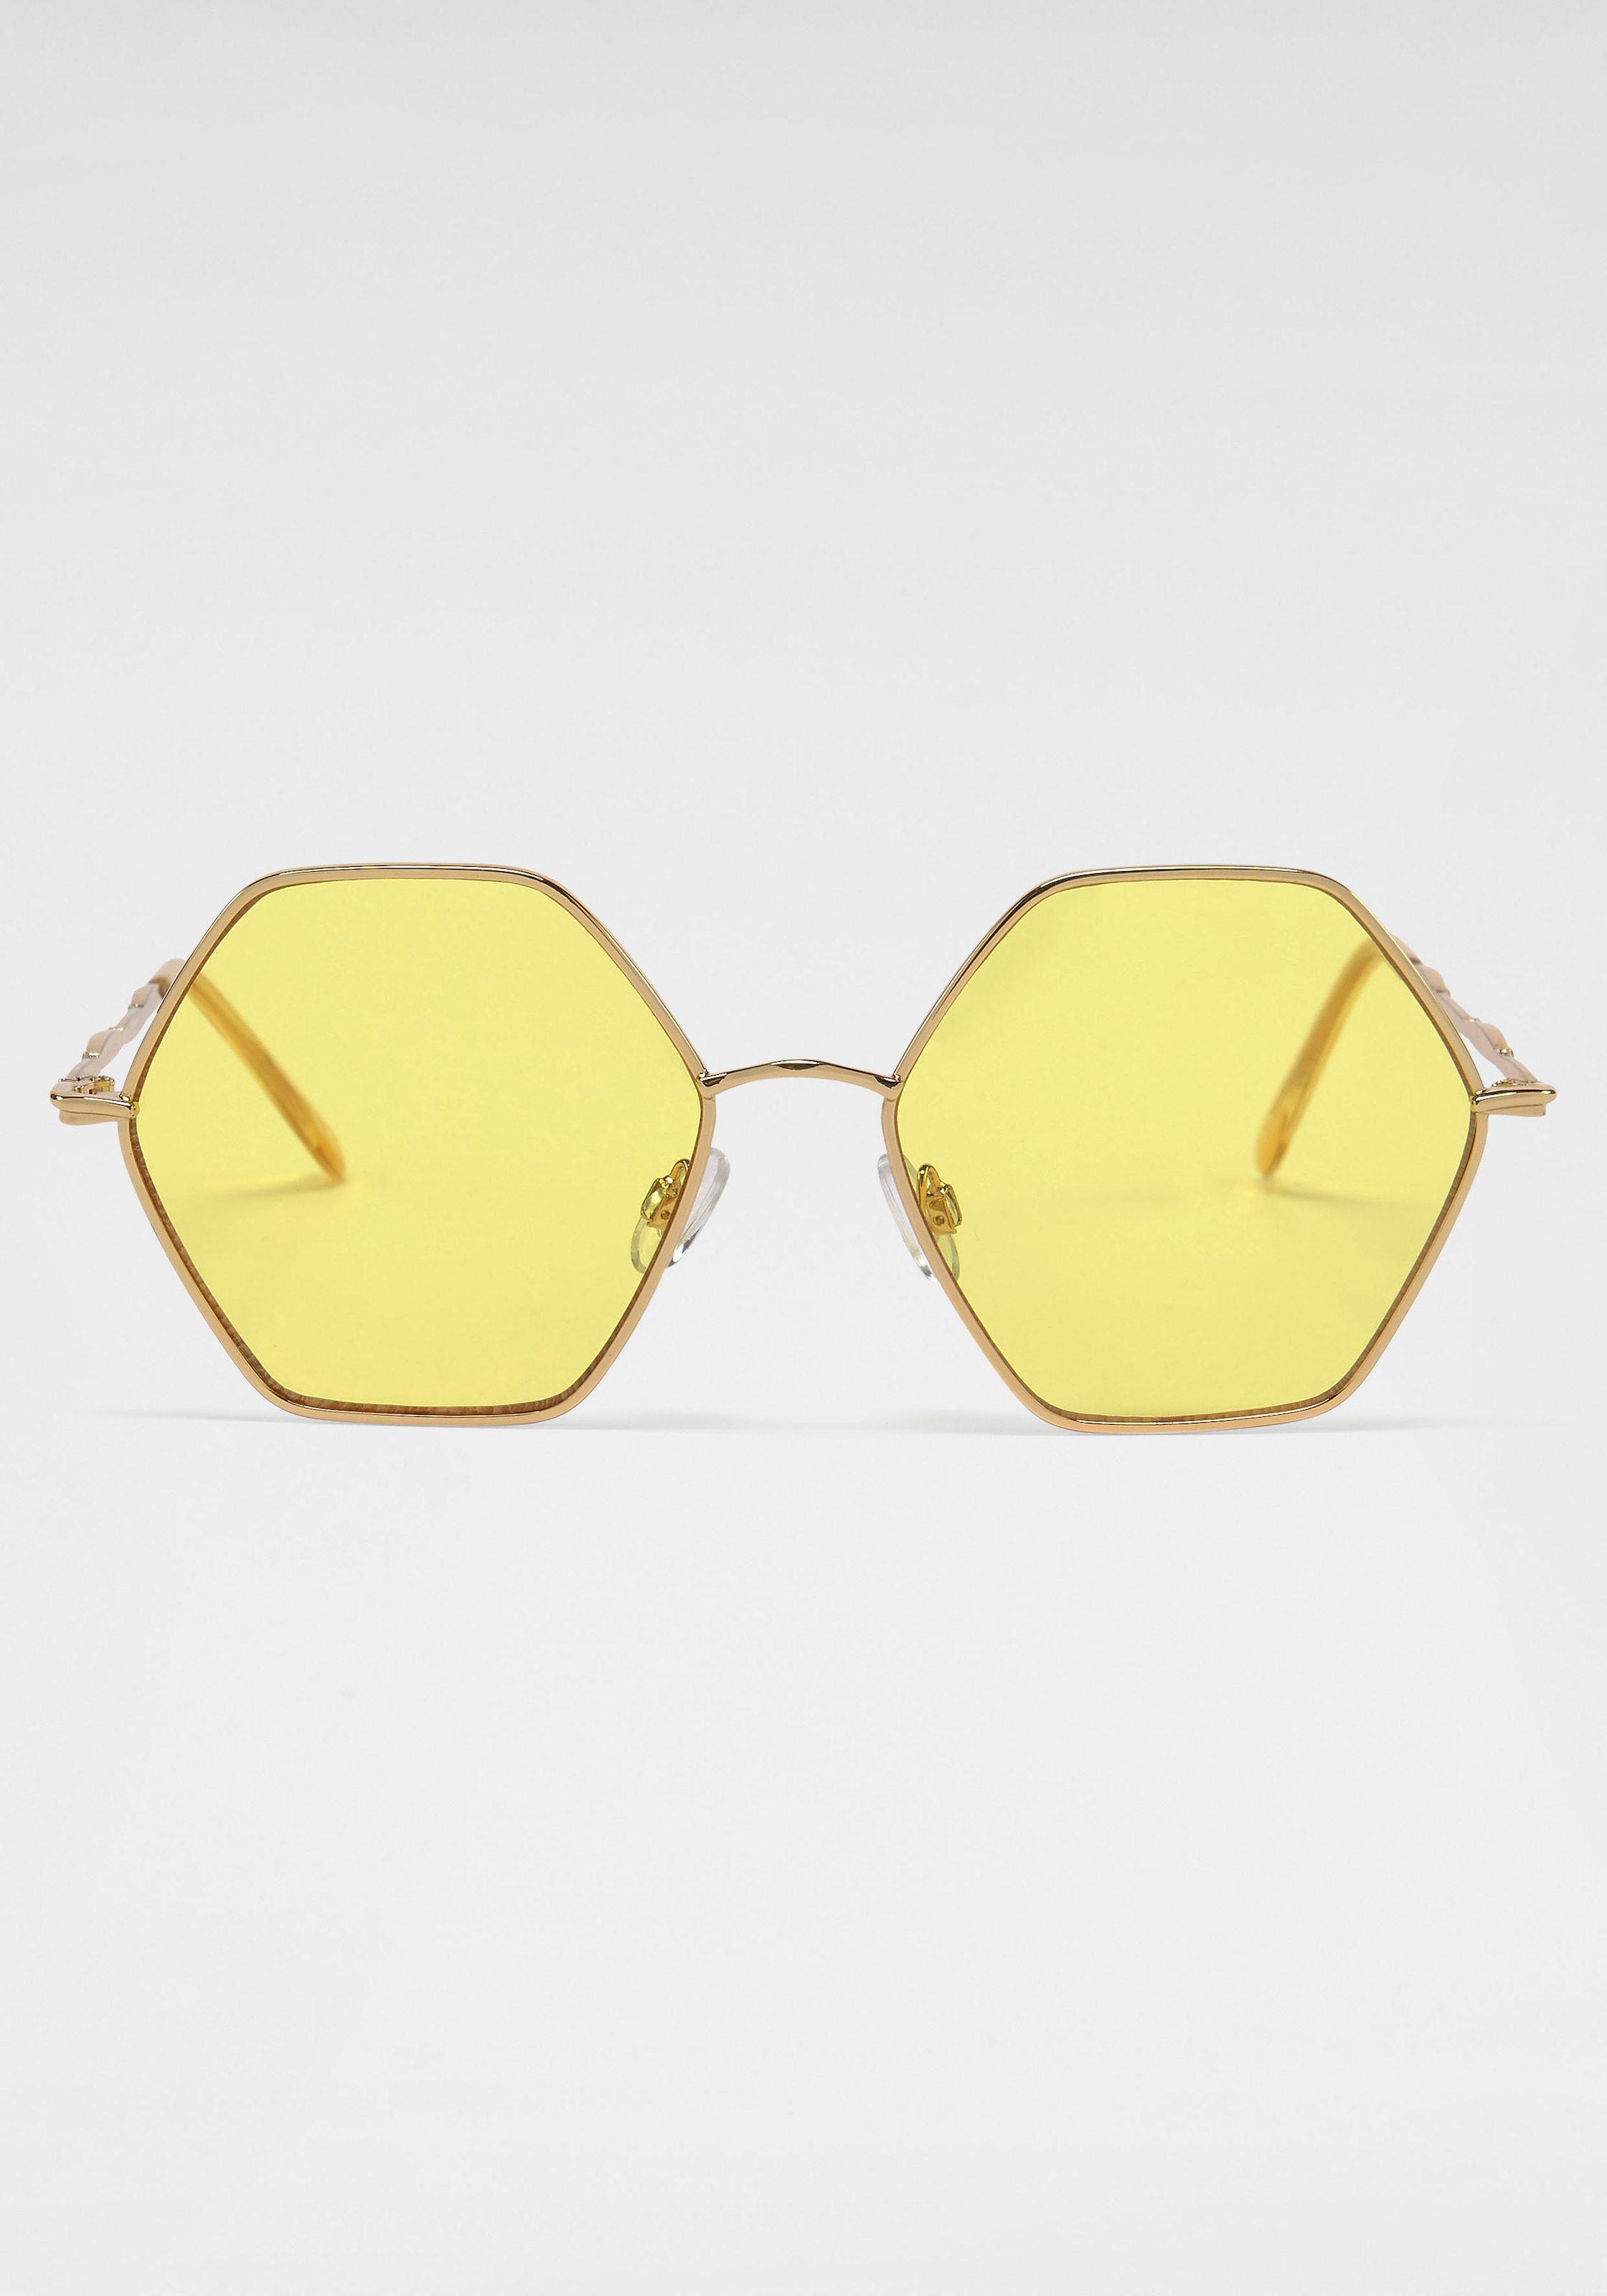 Eyewear Sonnenbrille kaufen SPIRIT YOUNG online LONDON